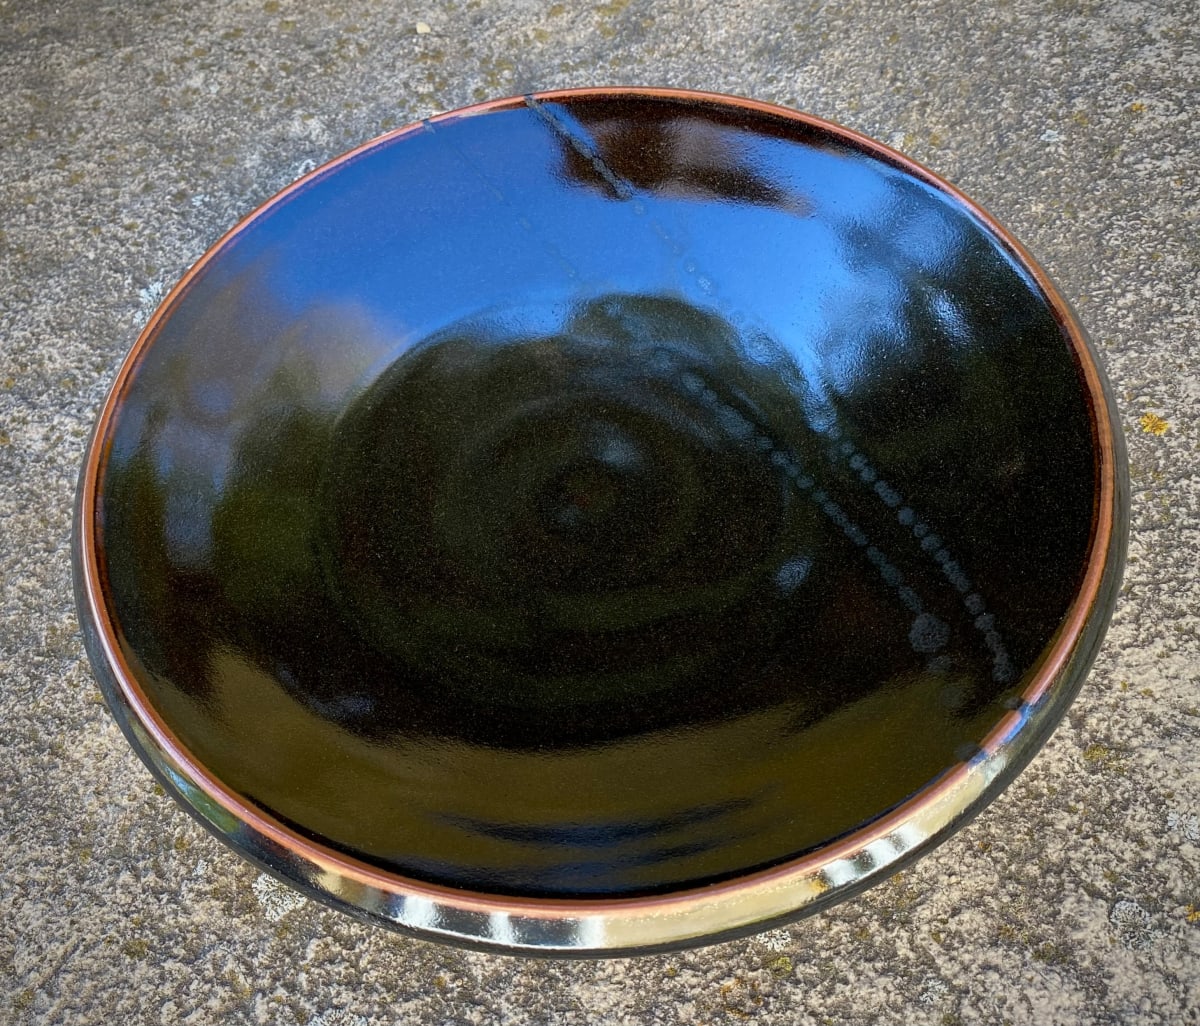 Round Plate by Carol Naughton  Image: 10.34" round